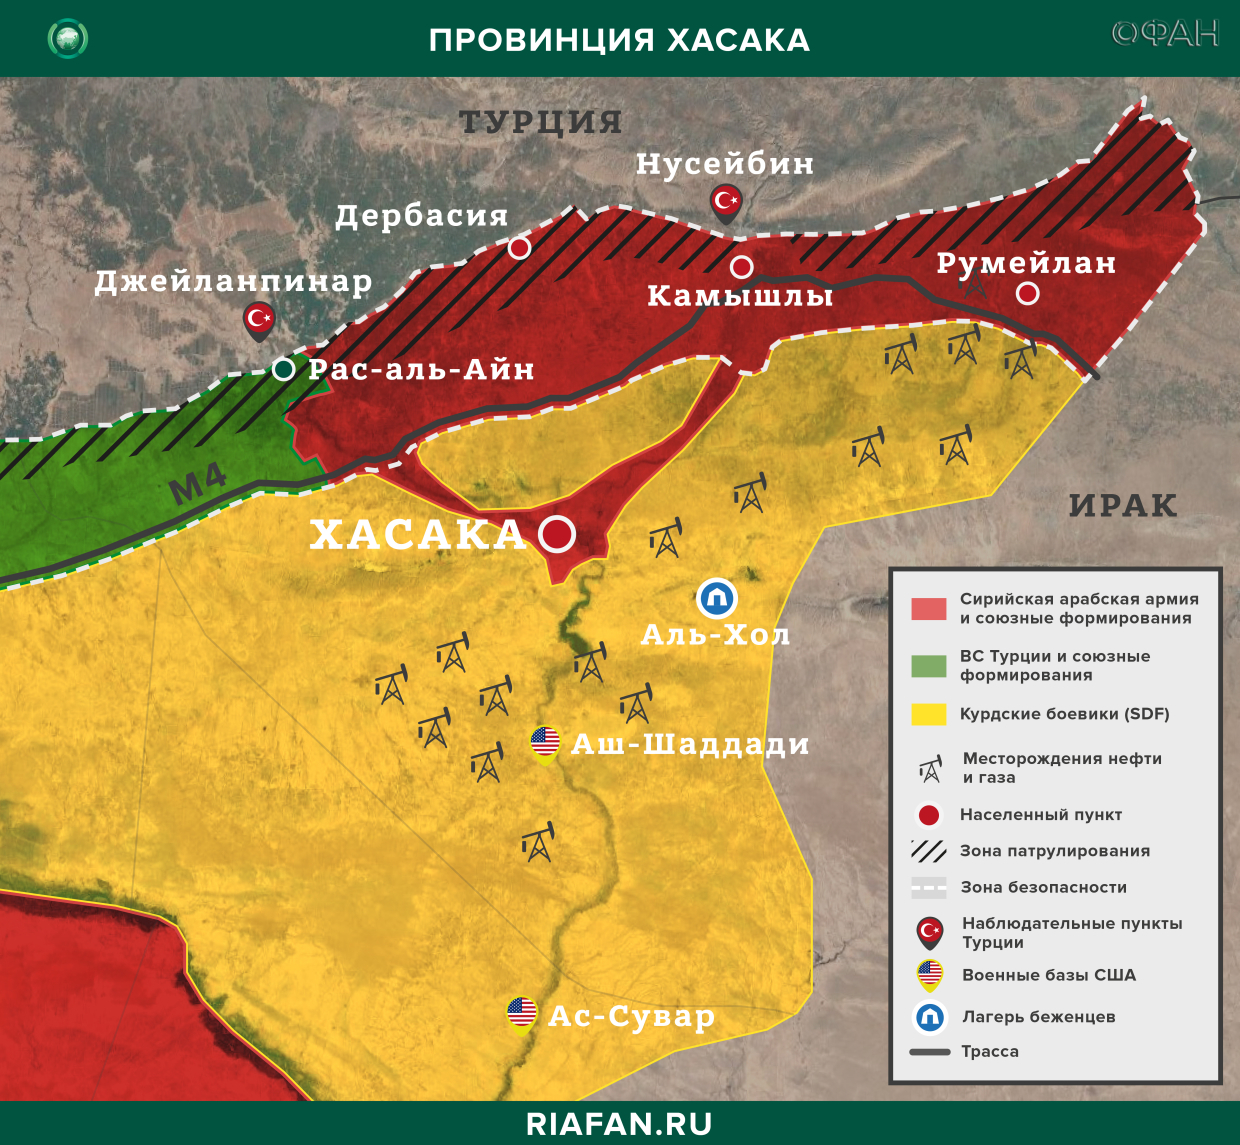 叙利亚每日结果 1 九月 06.00: 土耳其武装部队在伊德利卜设立新检查站